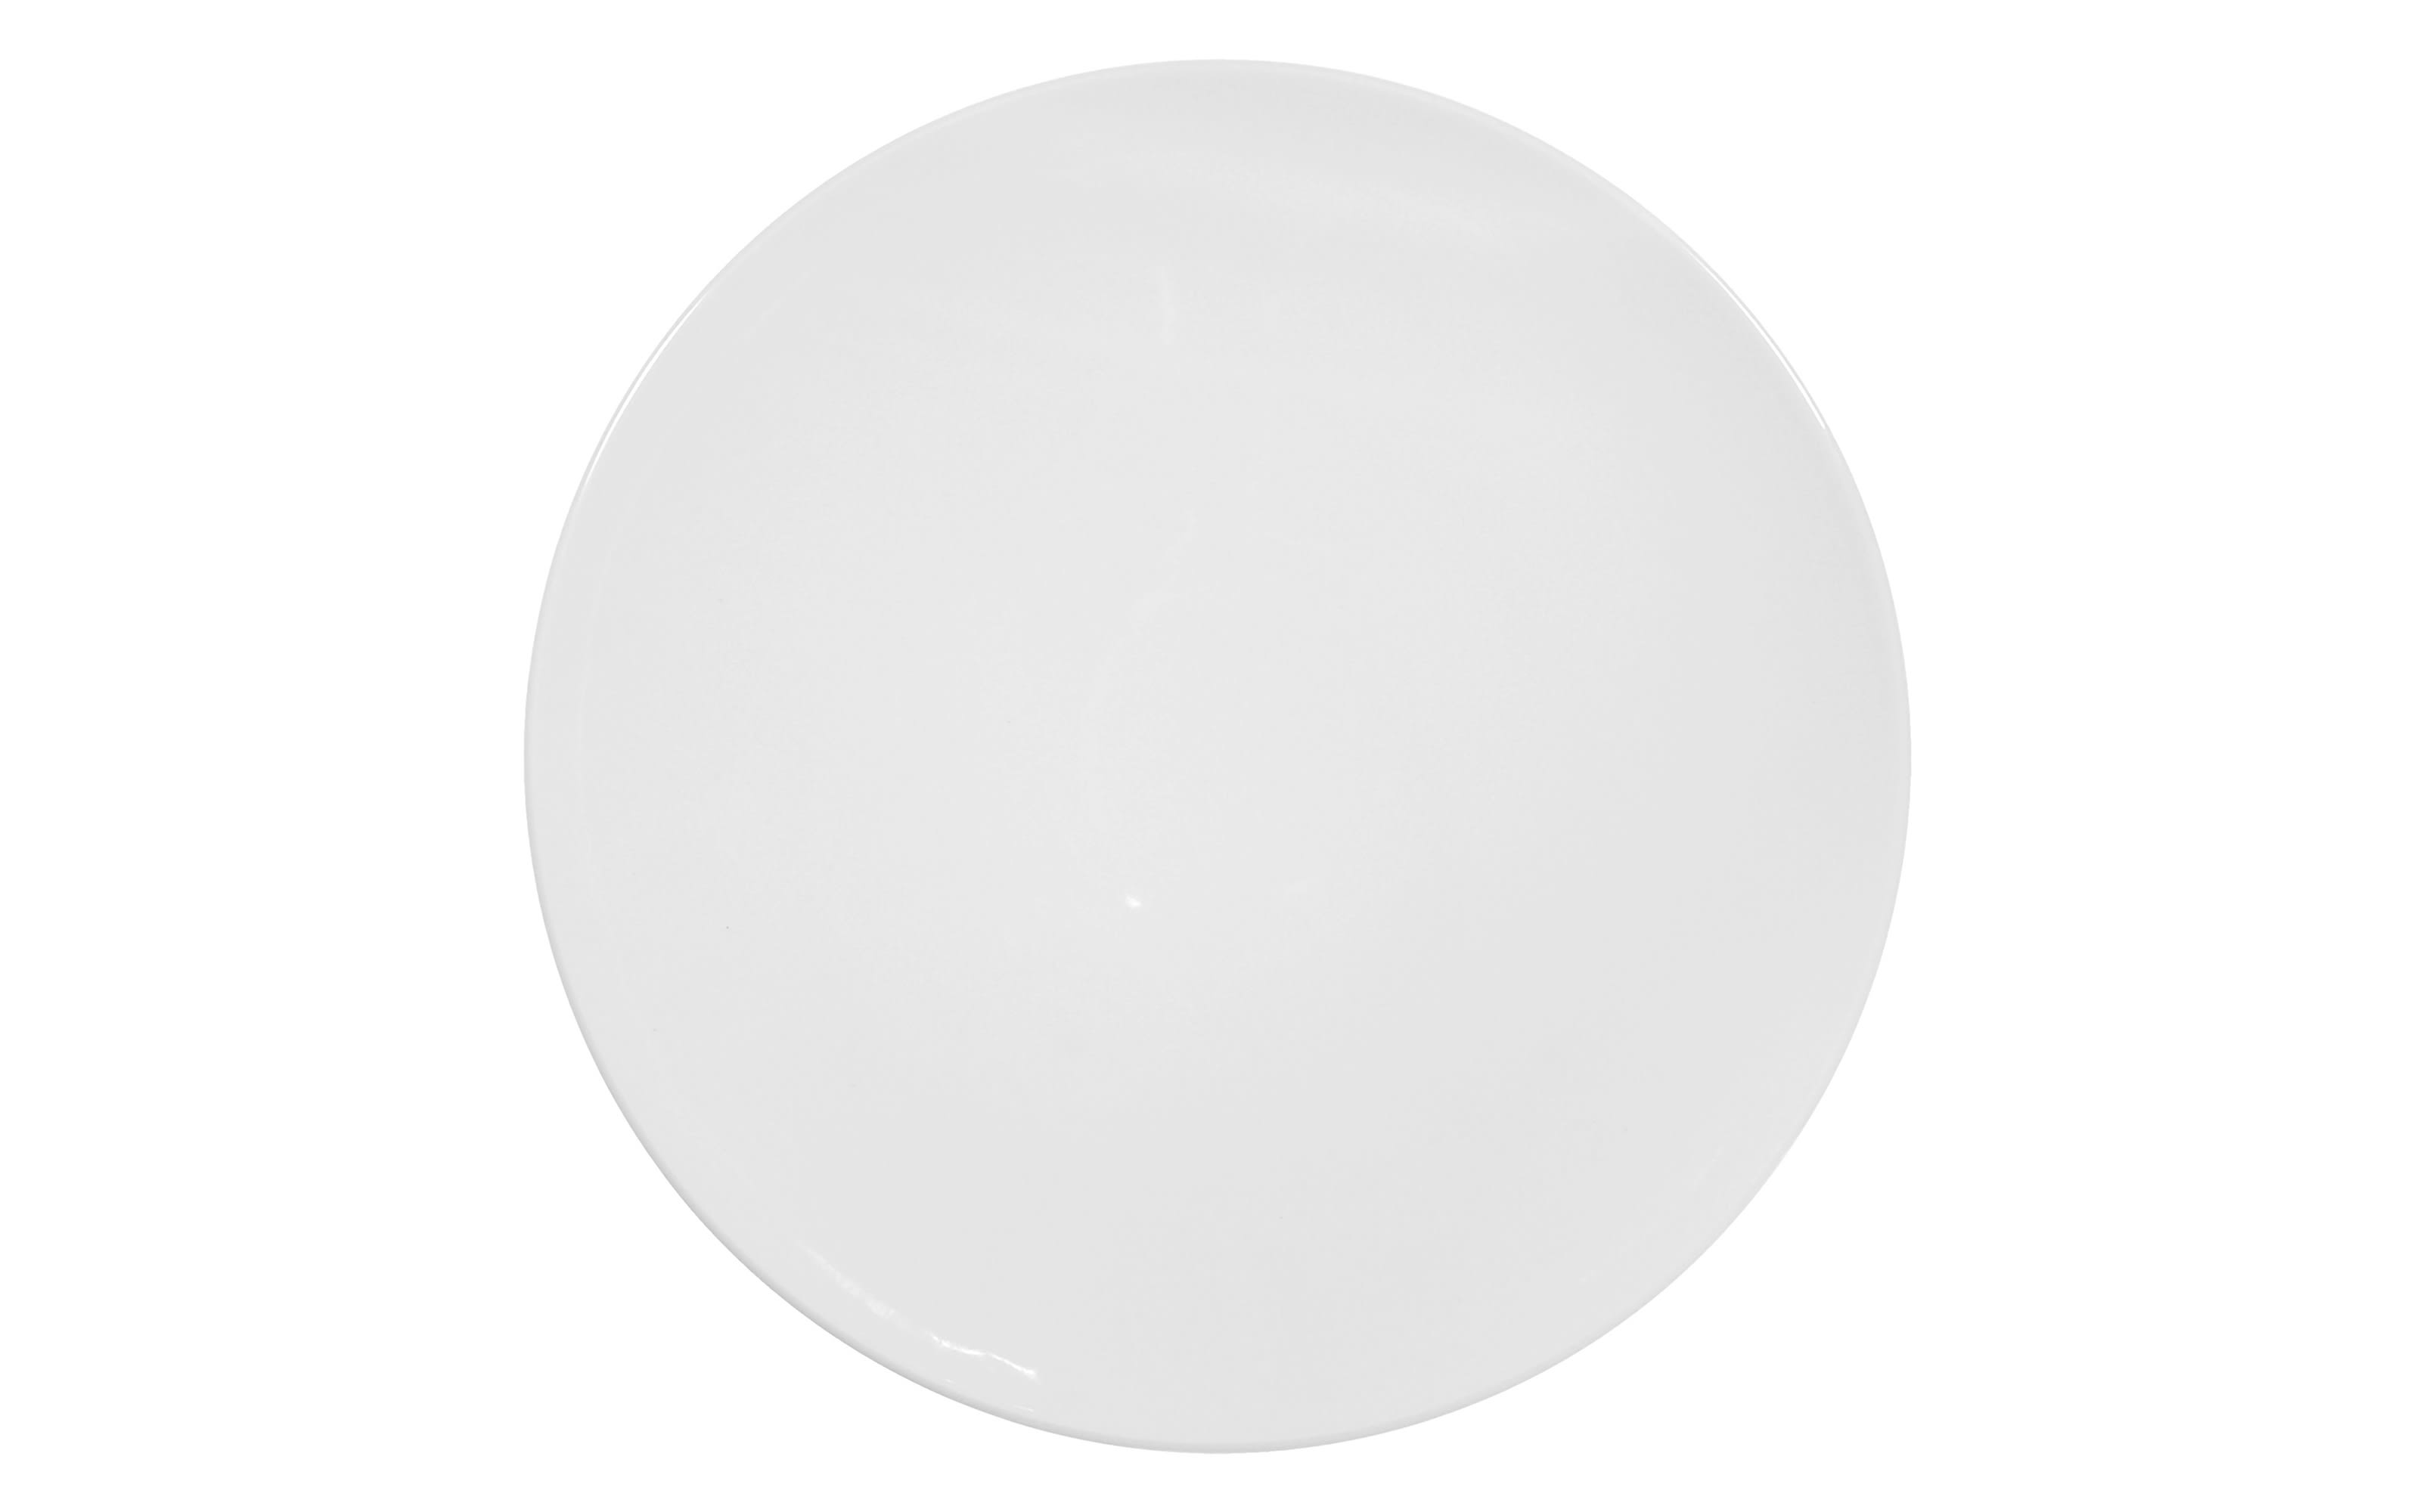 Tortenplatte Rondo Liane in weiß, 30 cm